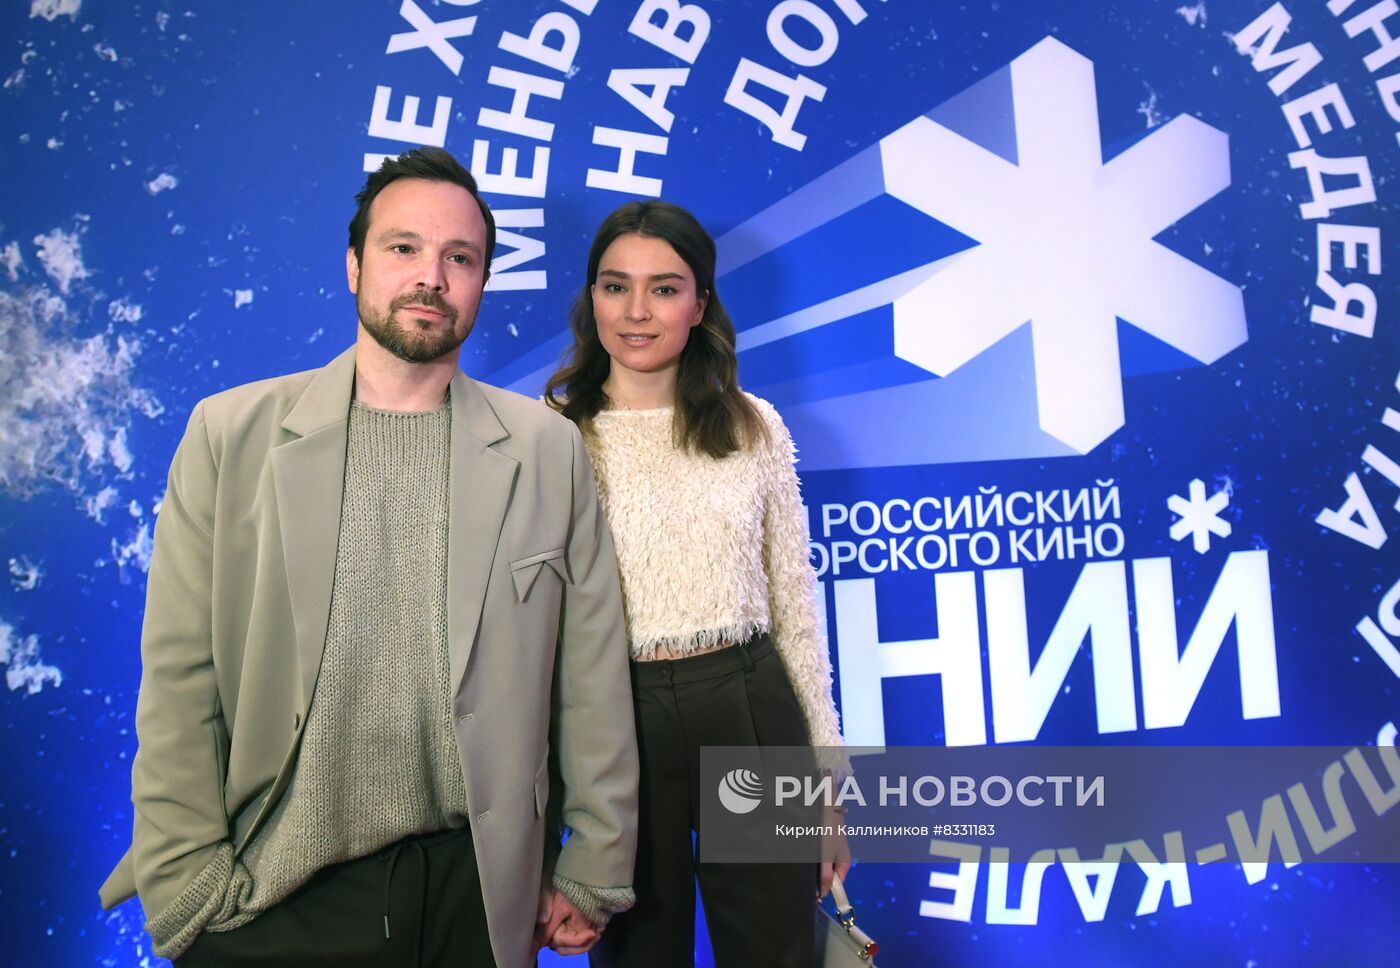 Открытие Первого открытого российского фестиваля "Зимний"